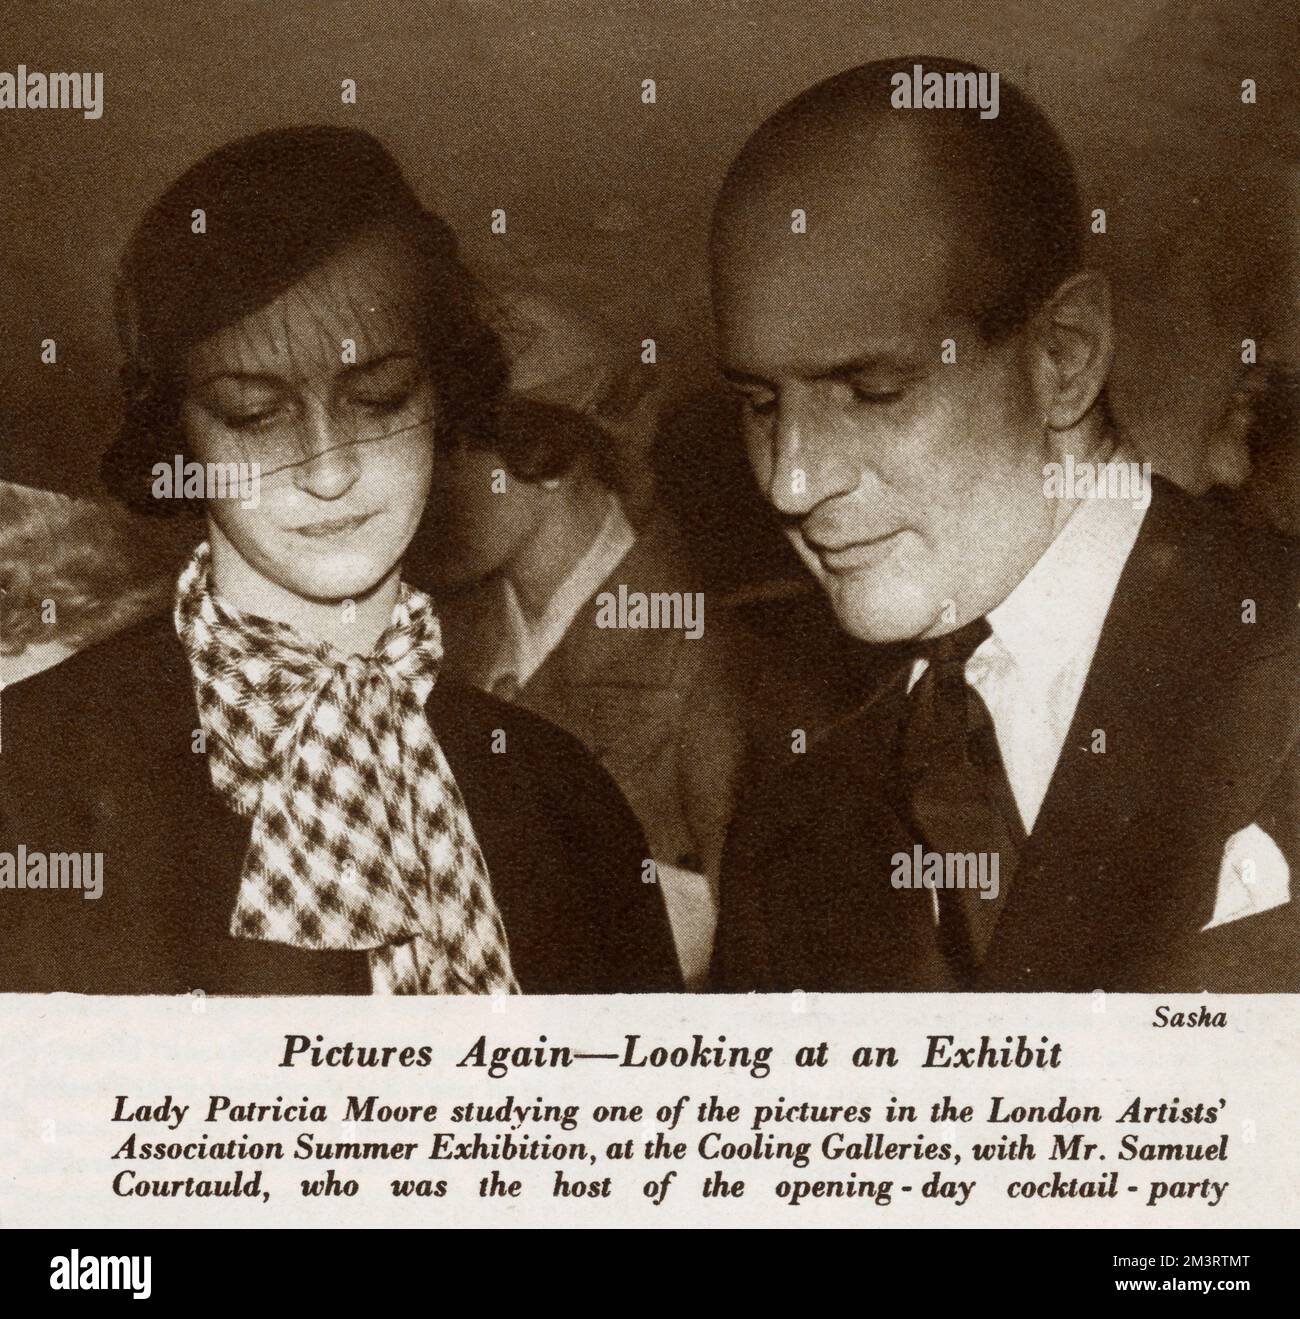 Lady Patricia Moore et Samuel Courtauld étudient l'une des photos de l'exposition d'été de la London Artists' Association aux Cooling Galleries. Courtauld était l'hôte de la soirée cocktail du jour d'ouverture. Date: 1933 Banque D'Images